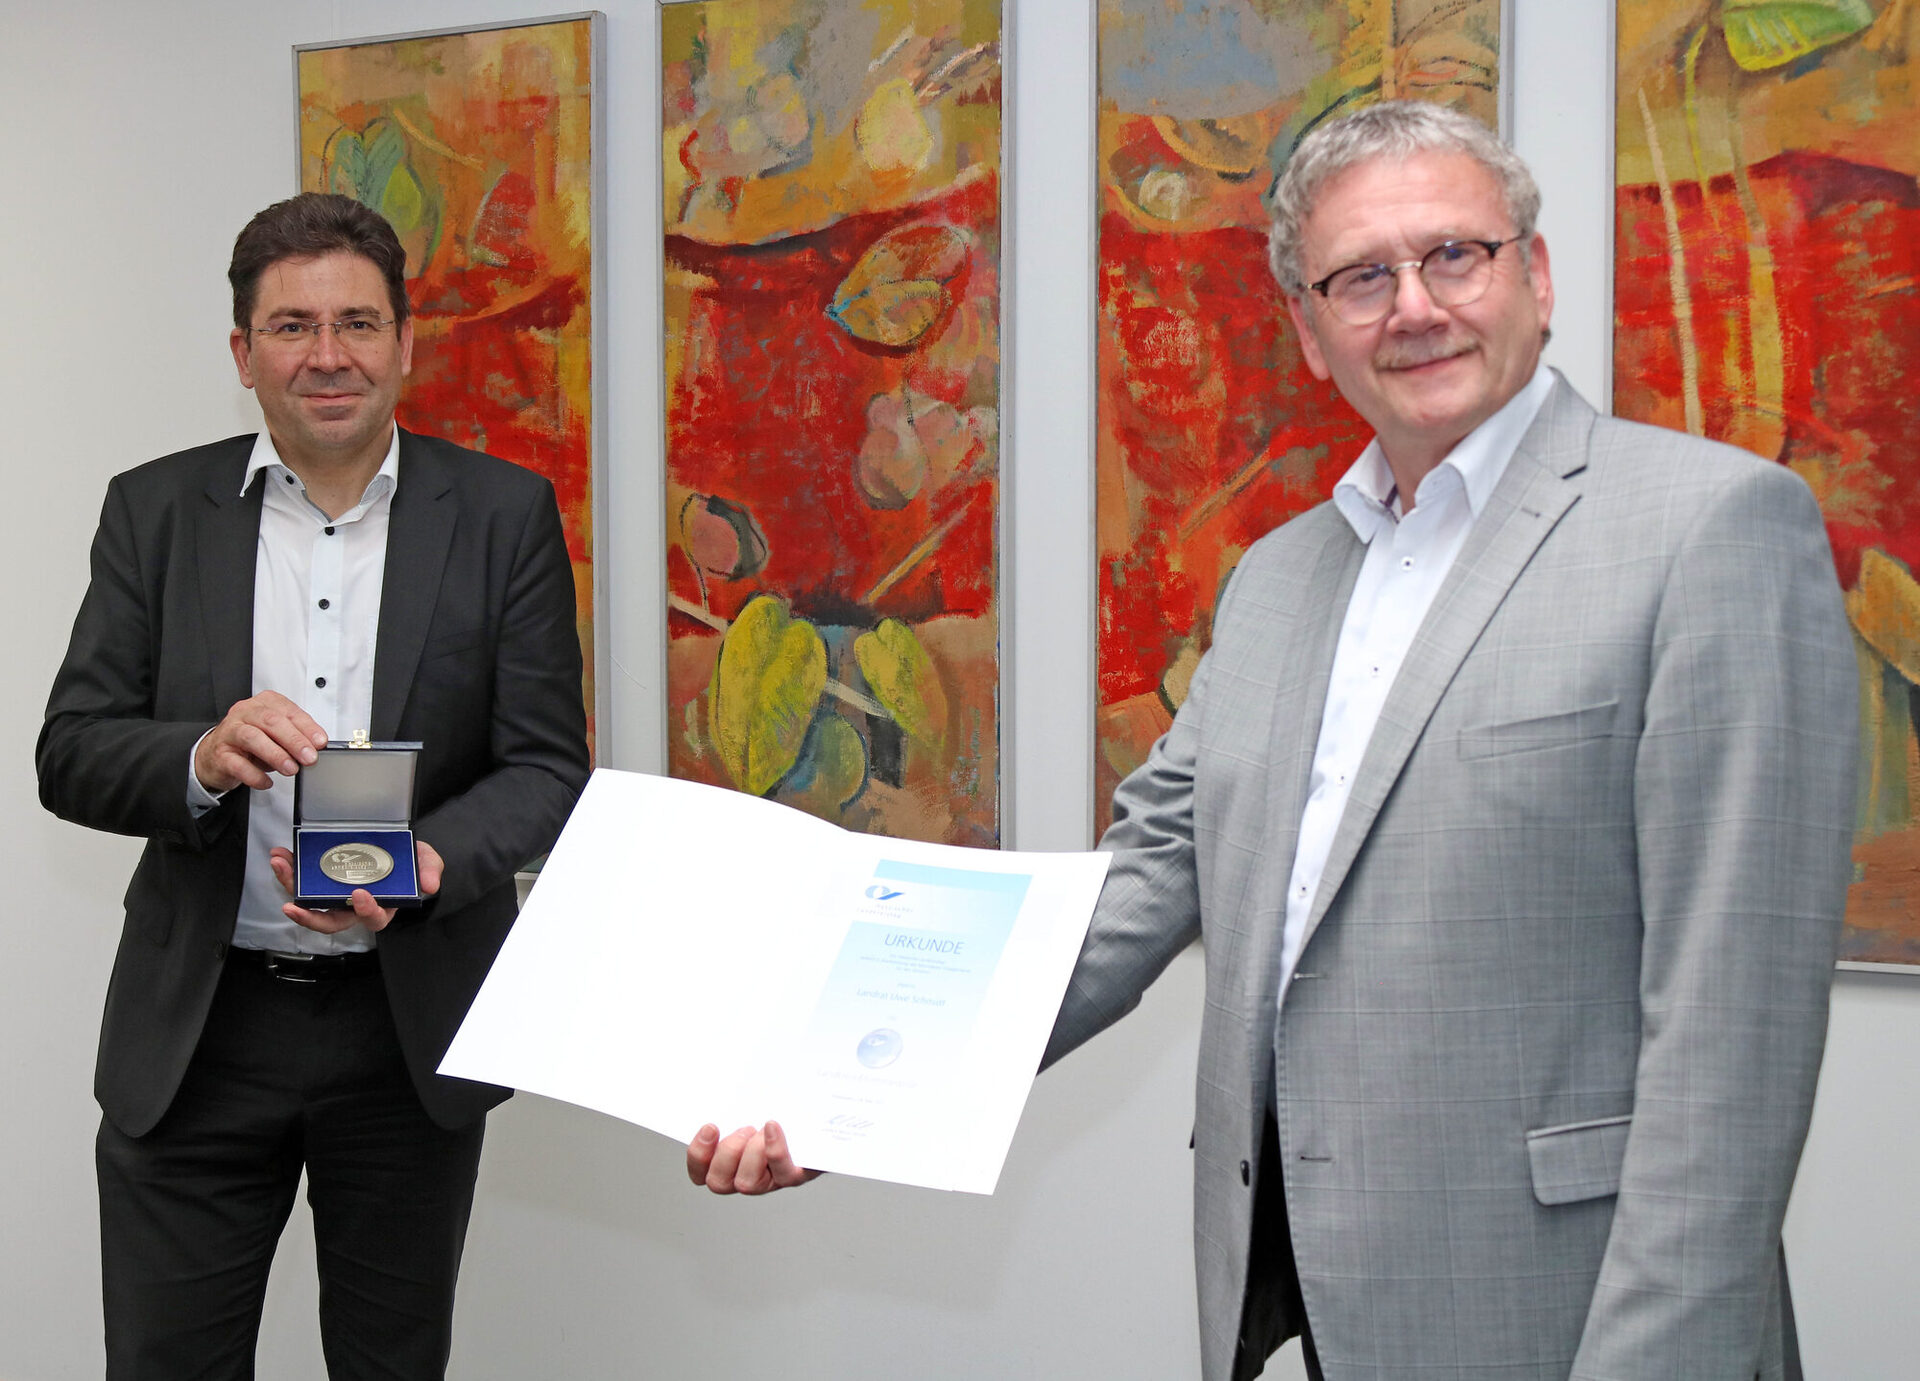 Die Landkreis-Ehrenmedaille und eine Urkunde wurden vom Geschäftsführenden Direktor des Hessischen Landkreistages, Prof. Dr. Jan Hilligardt, bei einem Besuch im Kasseler Kreishaus an Landrat Uwe Schmidt überreicht.